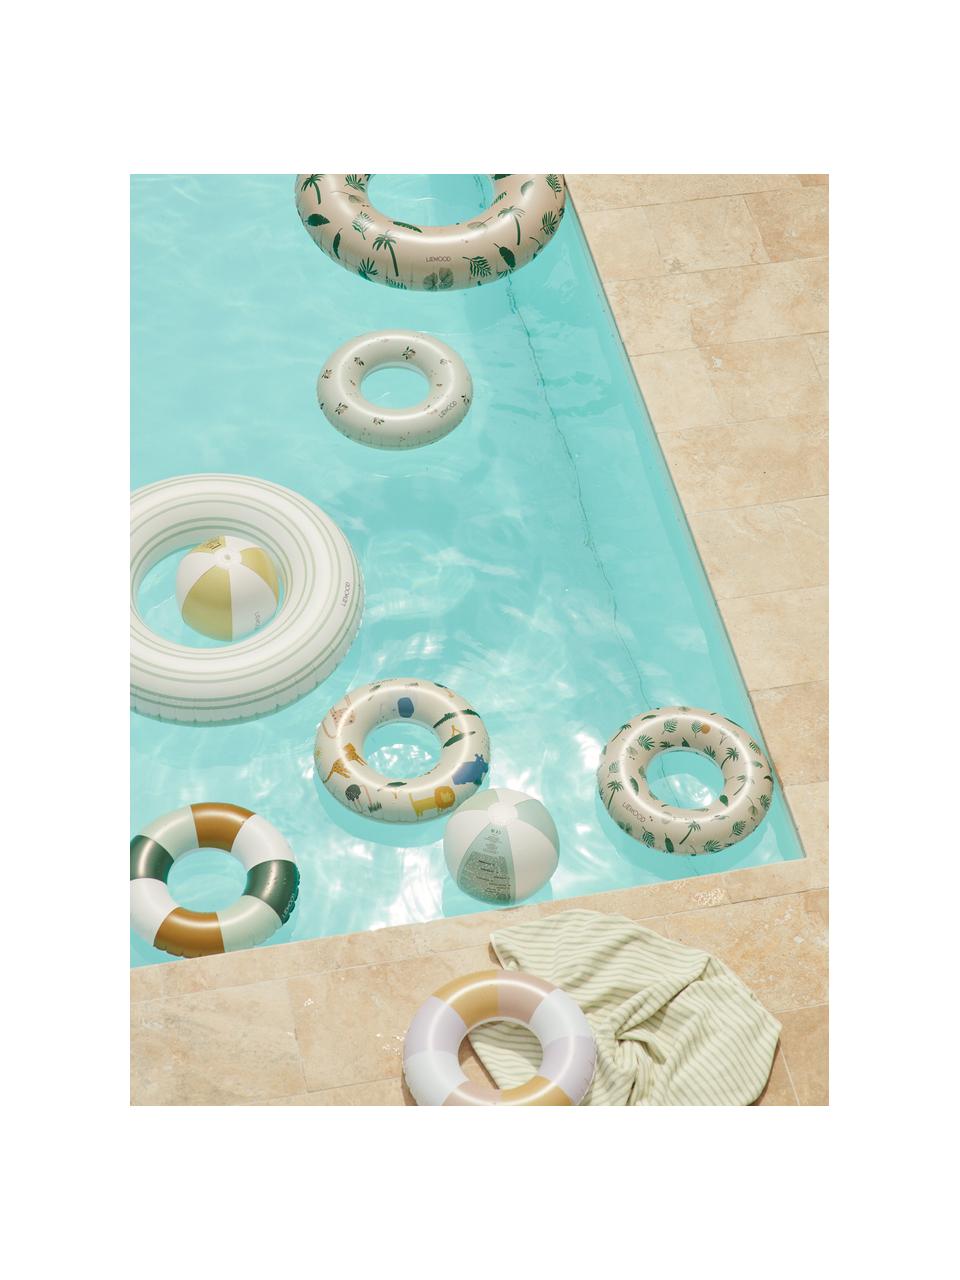 Kinder-Schwimmring Baloo, 100% Kunststoff (PVC), Beige, Bunt (Safari-Muster), Ø 45 cm